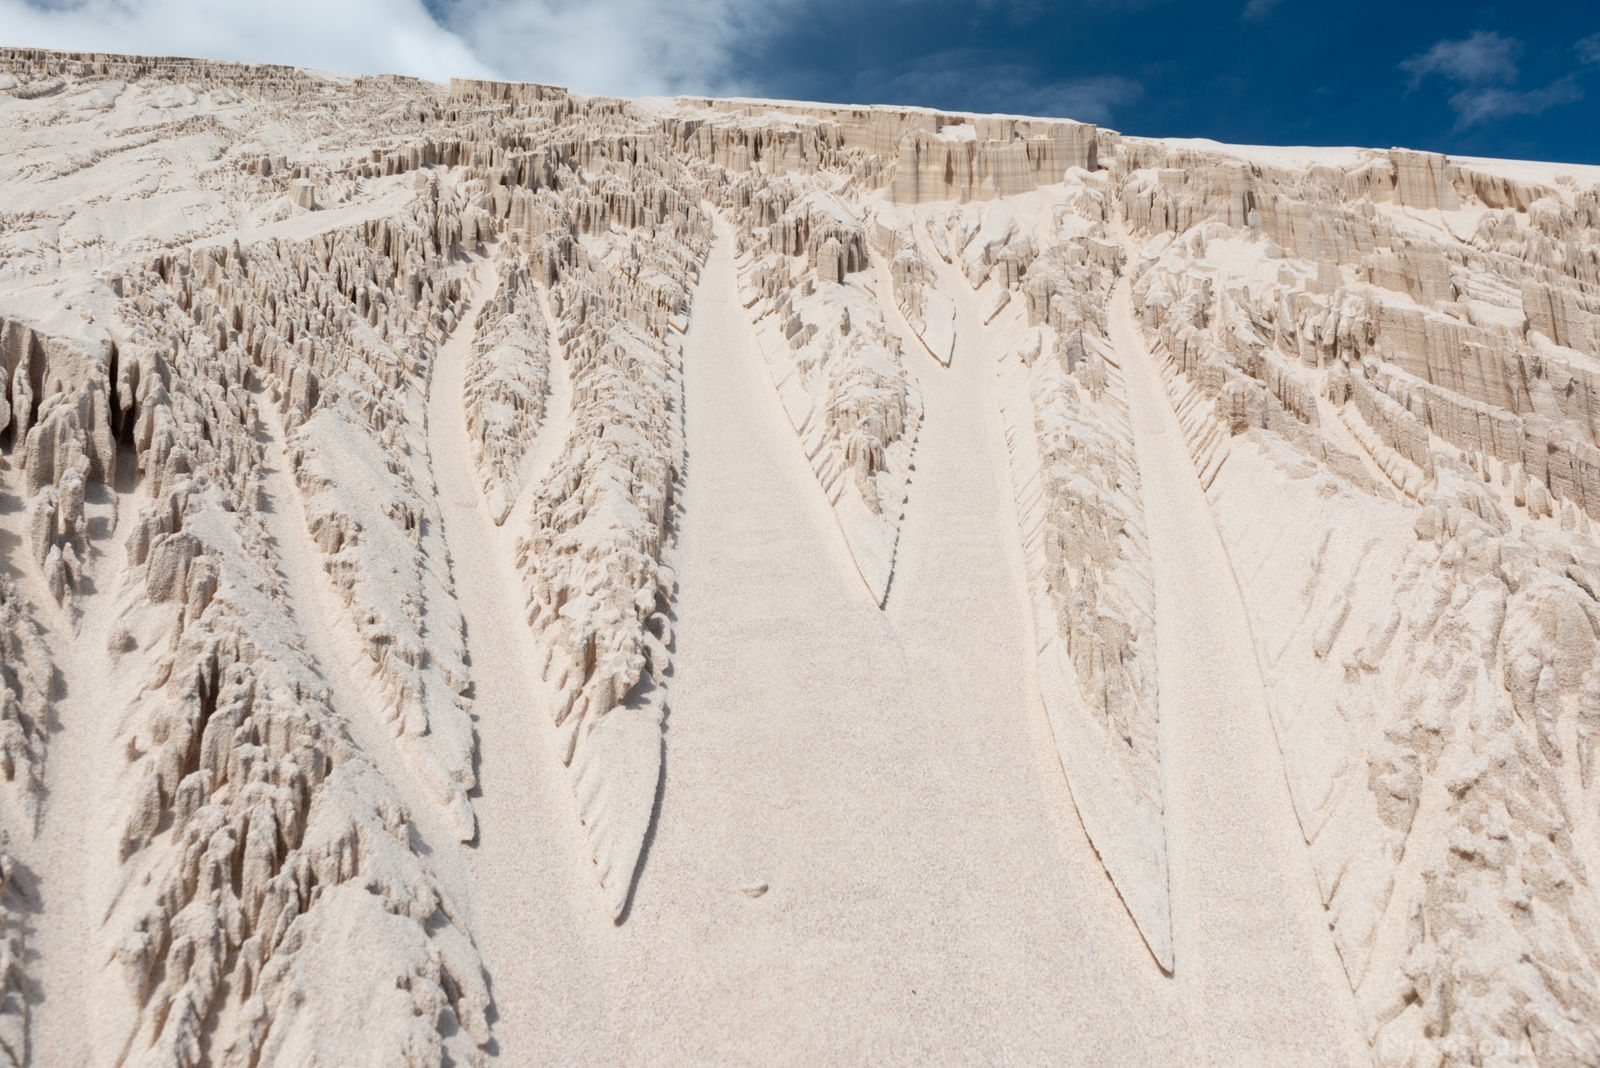 Image of Arher Sand Dunes, Socotra by Luka Esenko